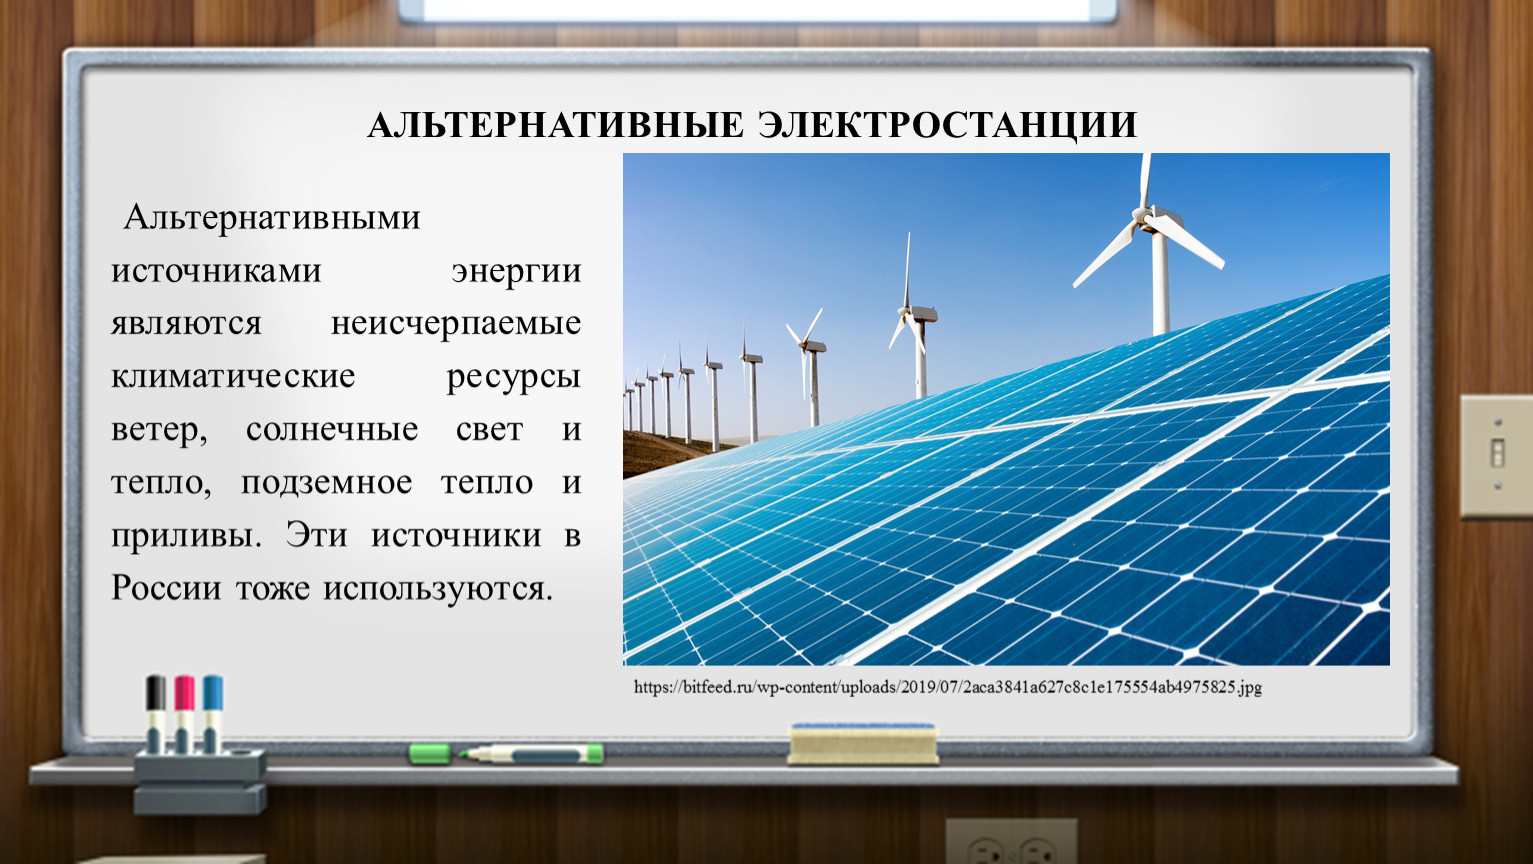 Альтернативные источники энергии в чем их перспективы. Альтернативными источниками энергии являются. Альтернативные источники энергии перспективы. Перспективы нетрадиционных источников энергии. Альтернативные источники энергии в России.